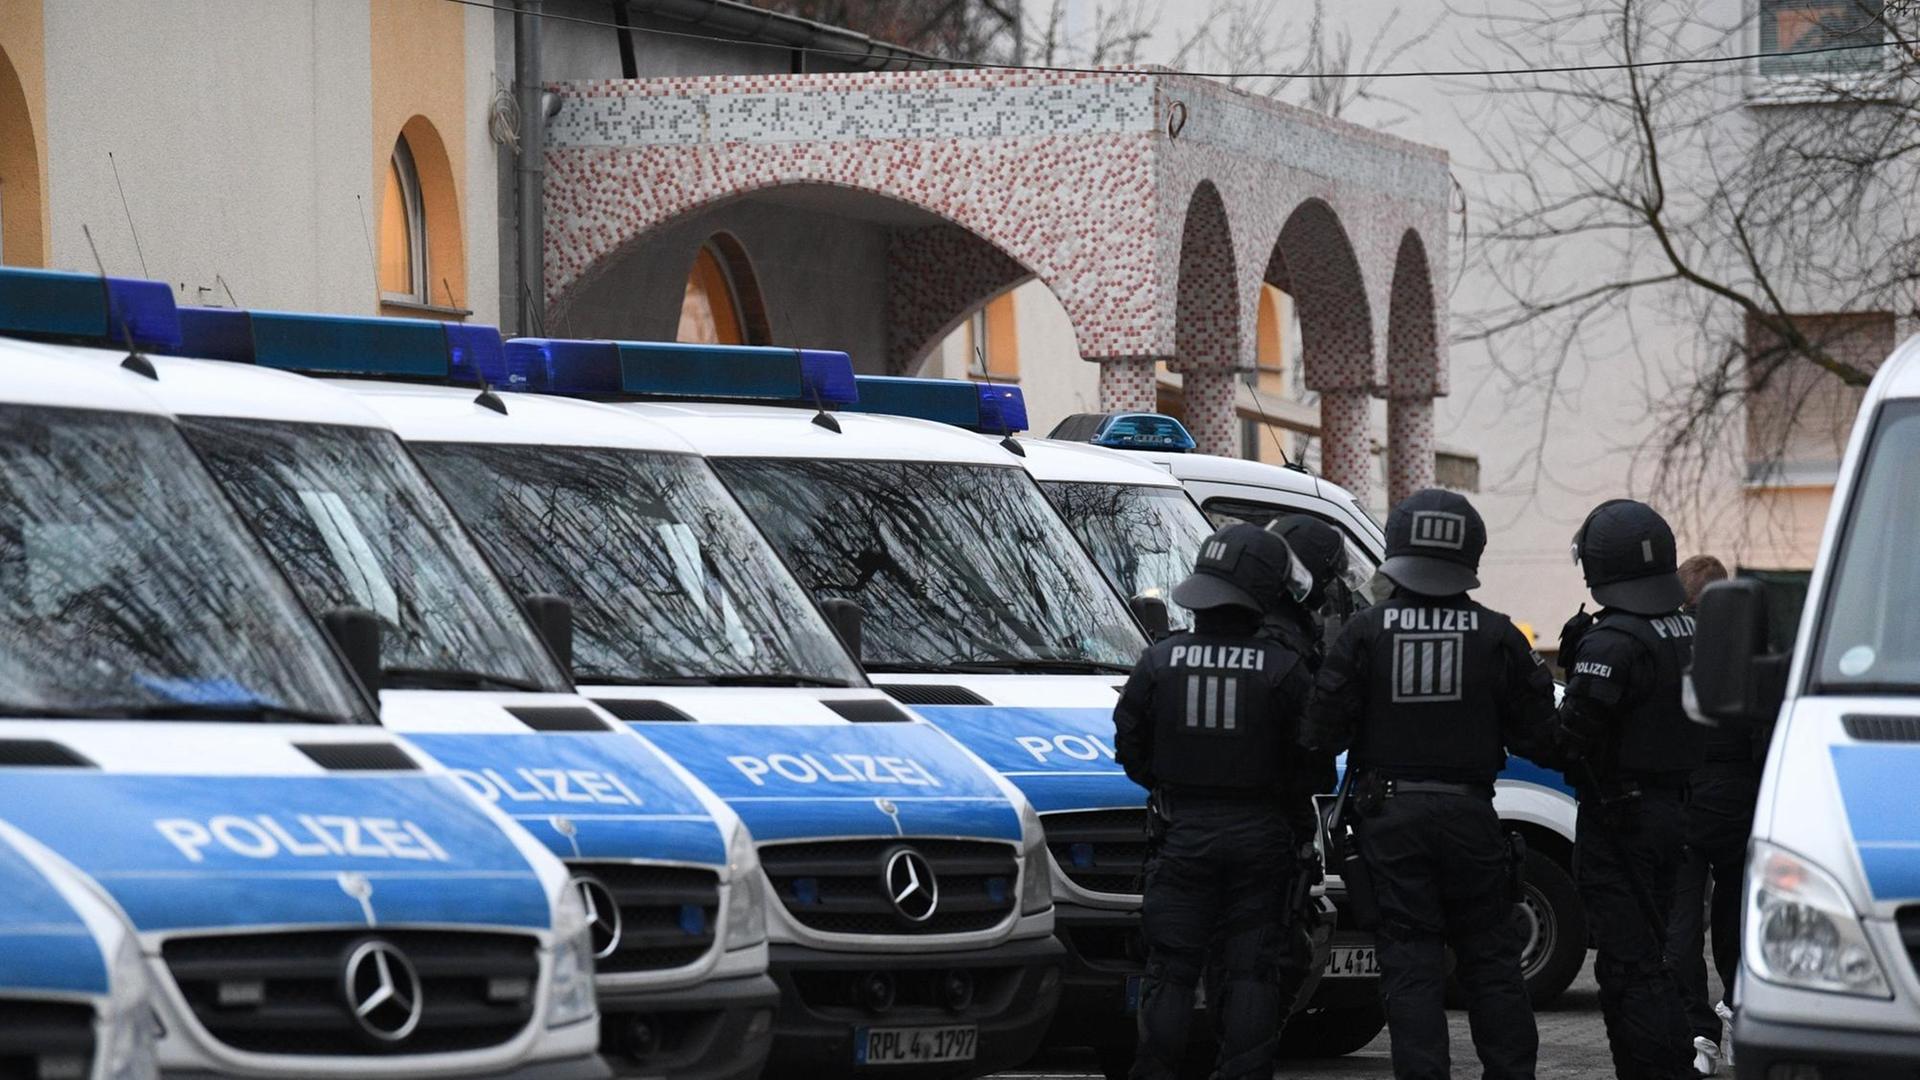 Polizisten stehen auf dem Gelände der Bilal Moschee in Frankfurt am Main an ihren Fahrzeugen. Die Polizei hat landesweit 54 Objekte durchsucht.